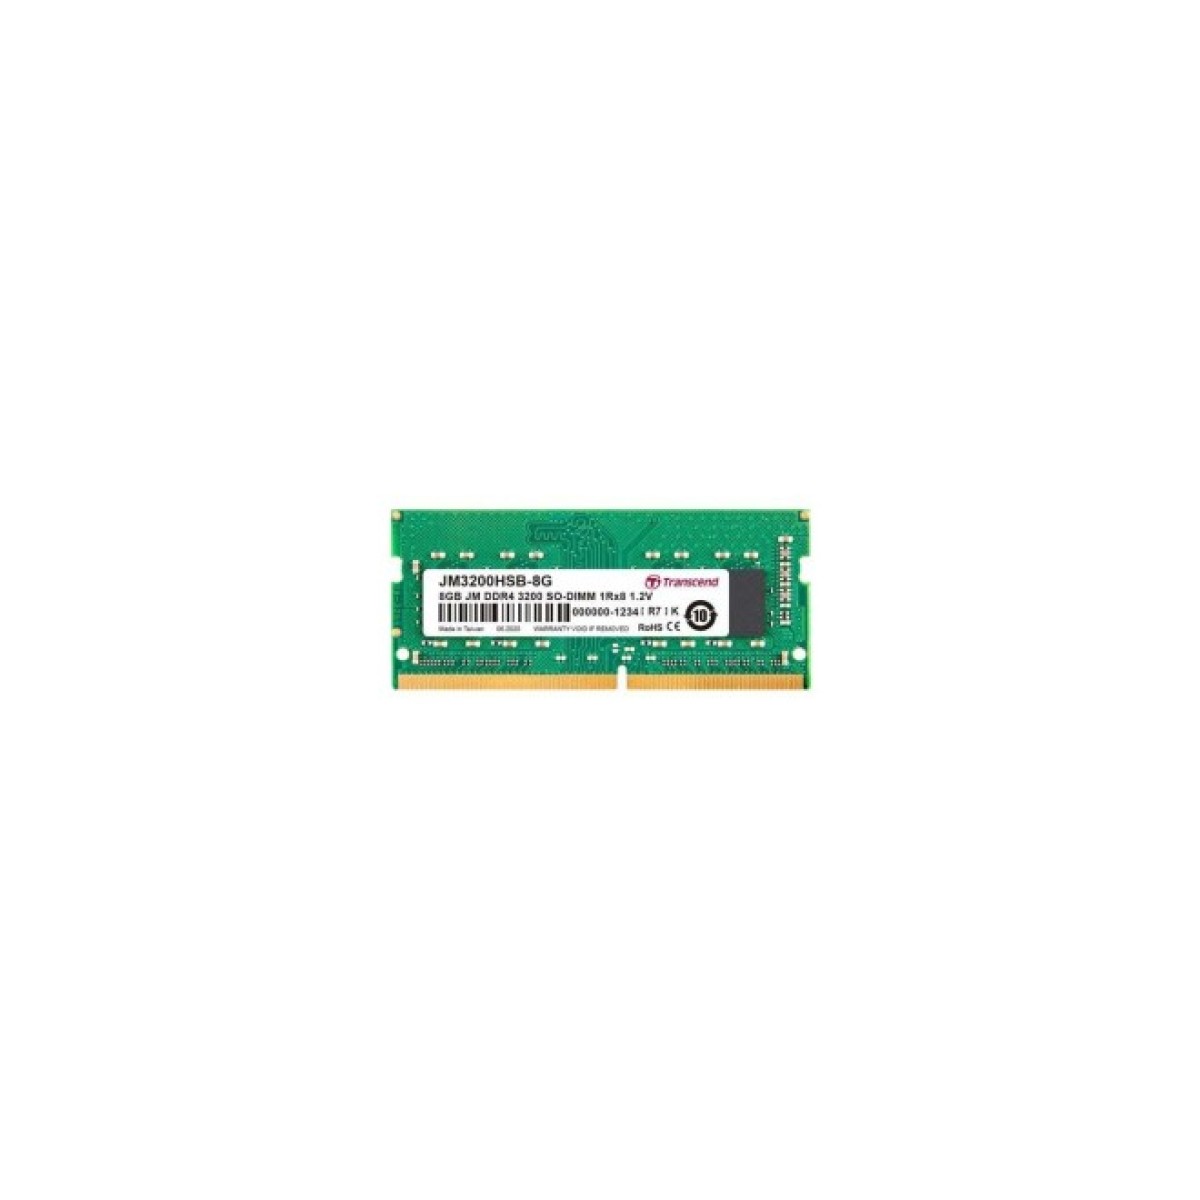 Модуль памяти для ноутбука SoDIMM DDR4 8GB 3200 MHz Transcend (JM3200HSB-8G) 256_256.jpg